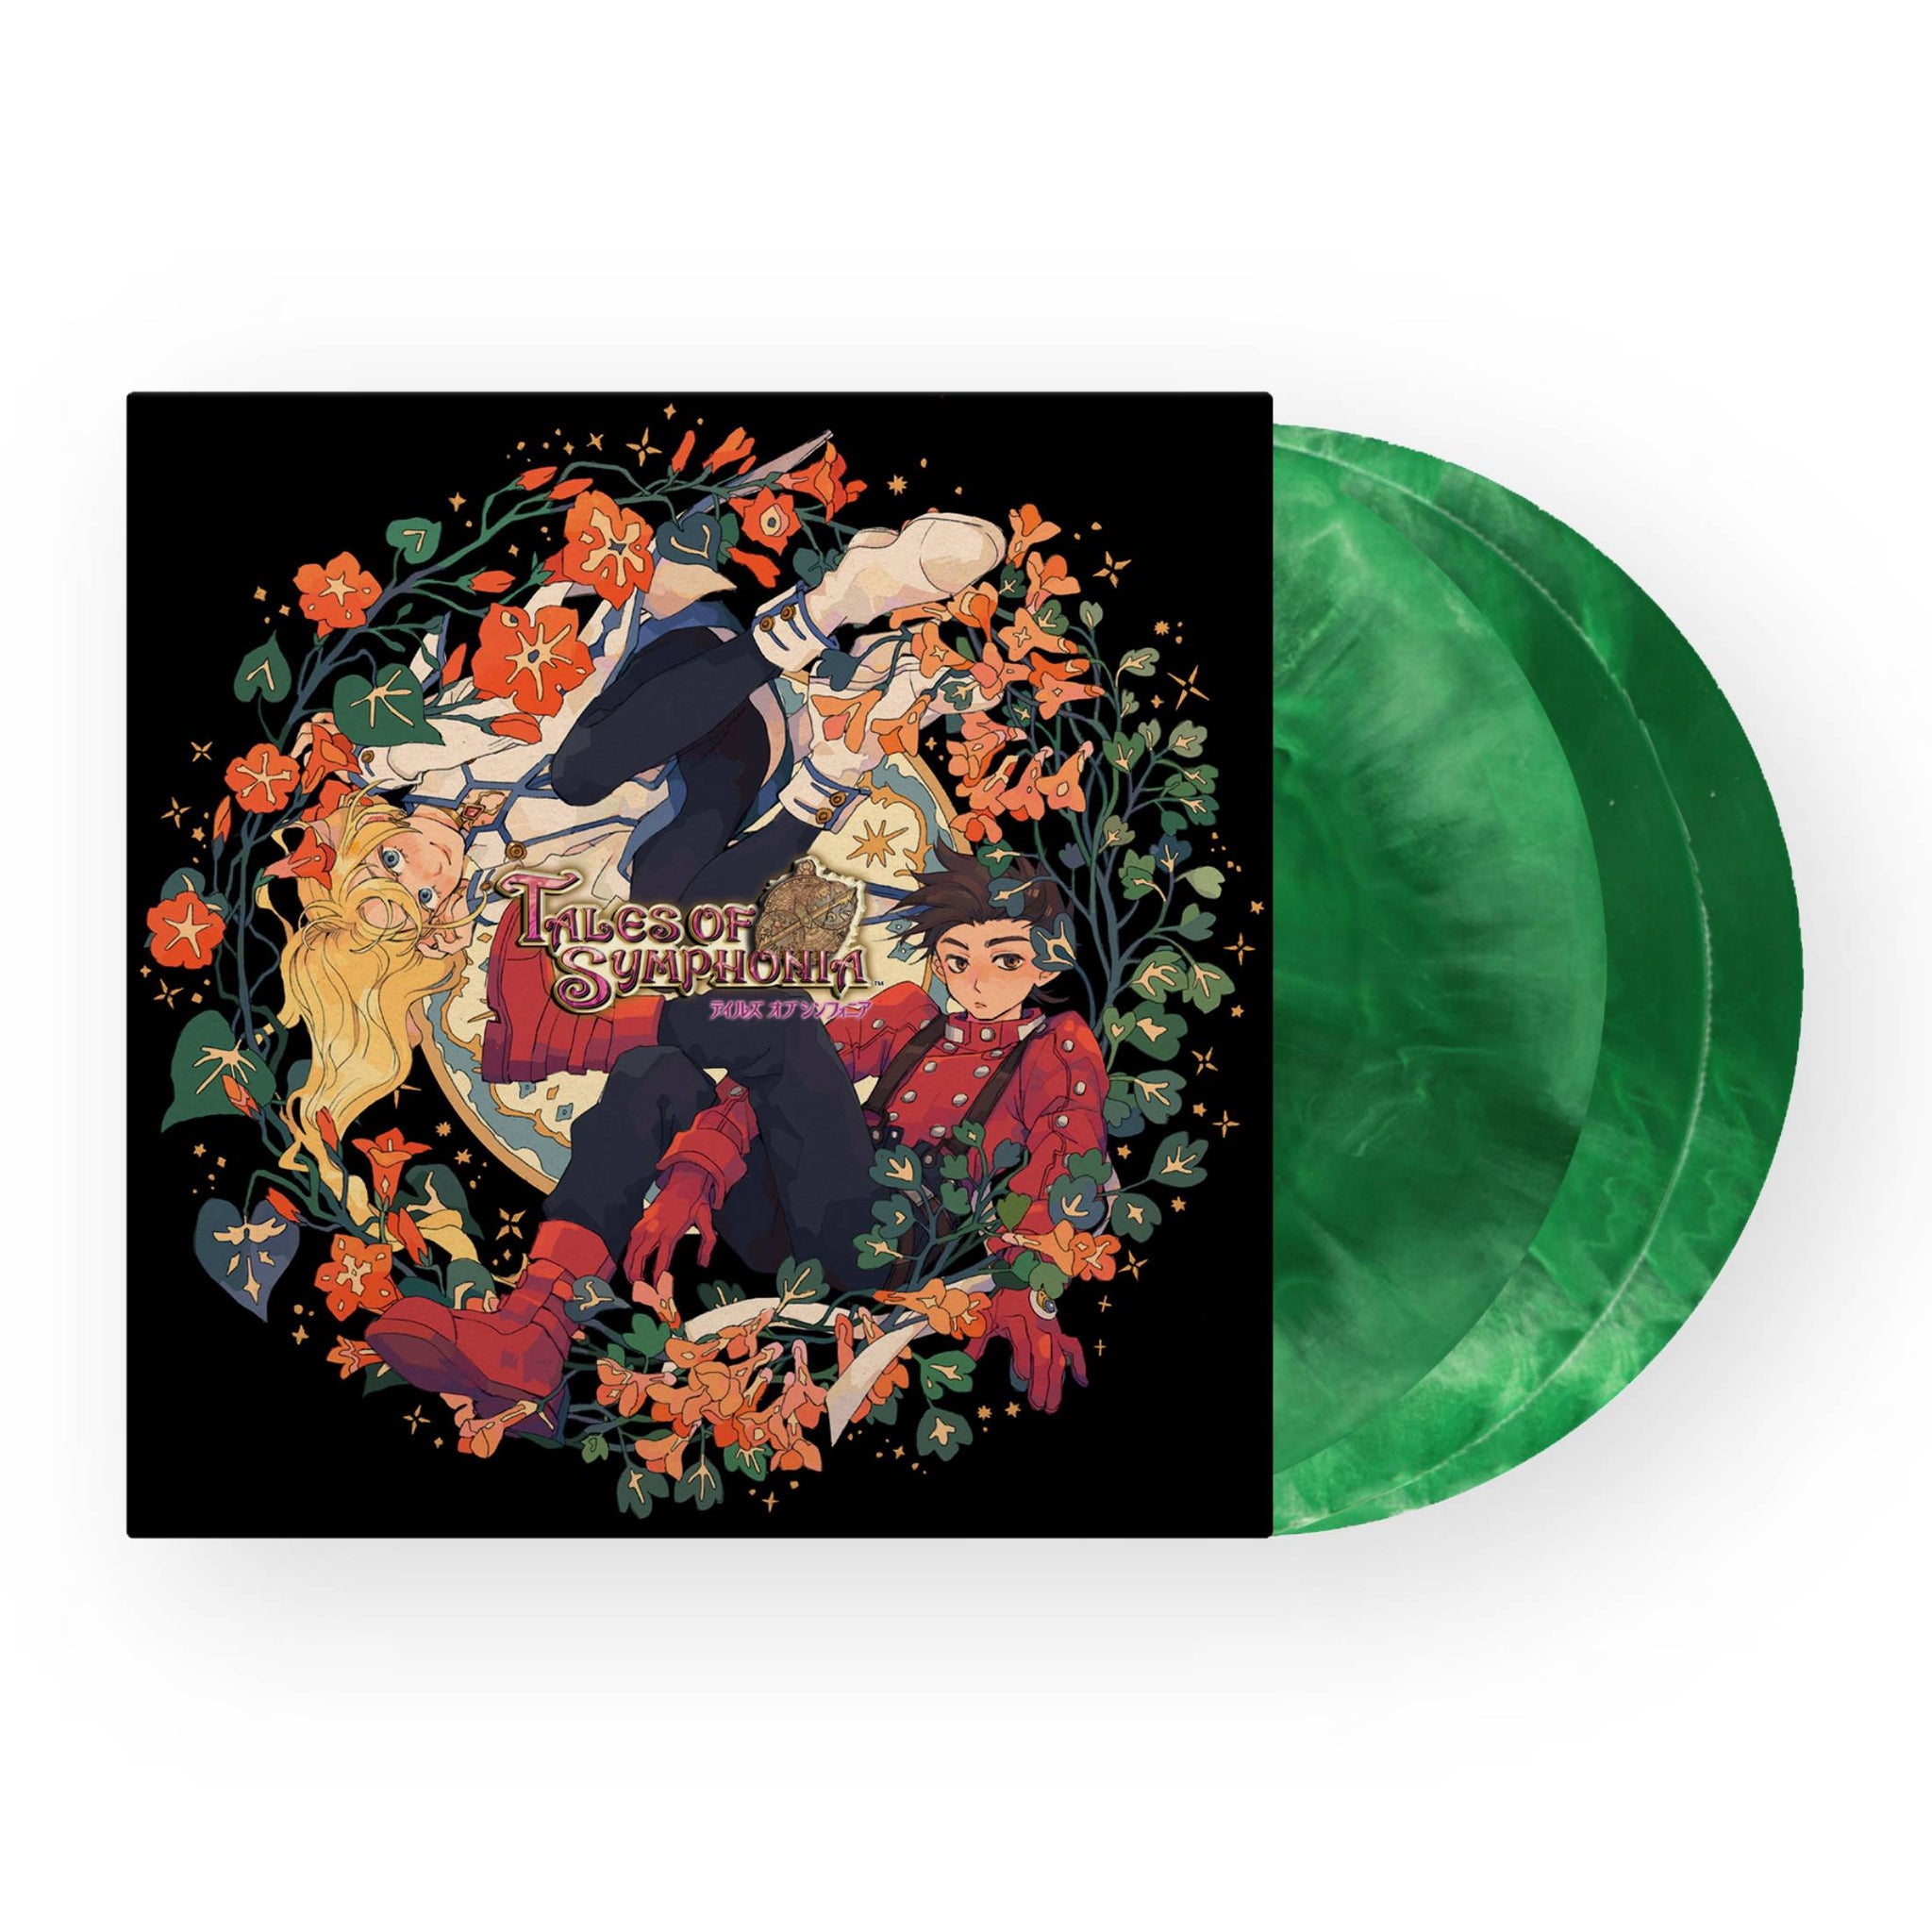 Tales Of Symphonia Soundtrack 3xLP (Translucent Green Marble Vinyl)